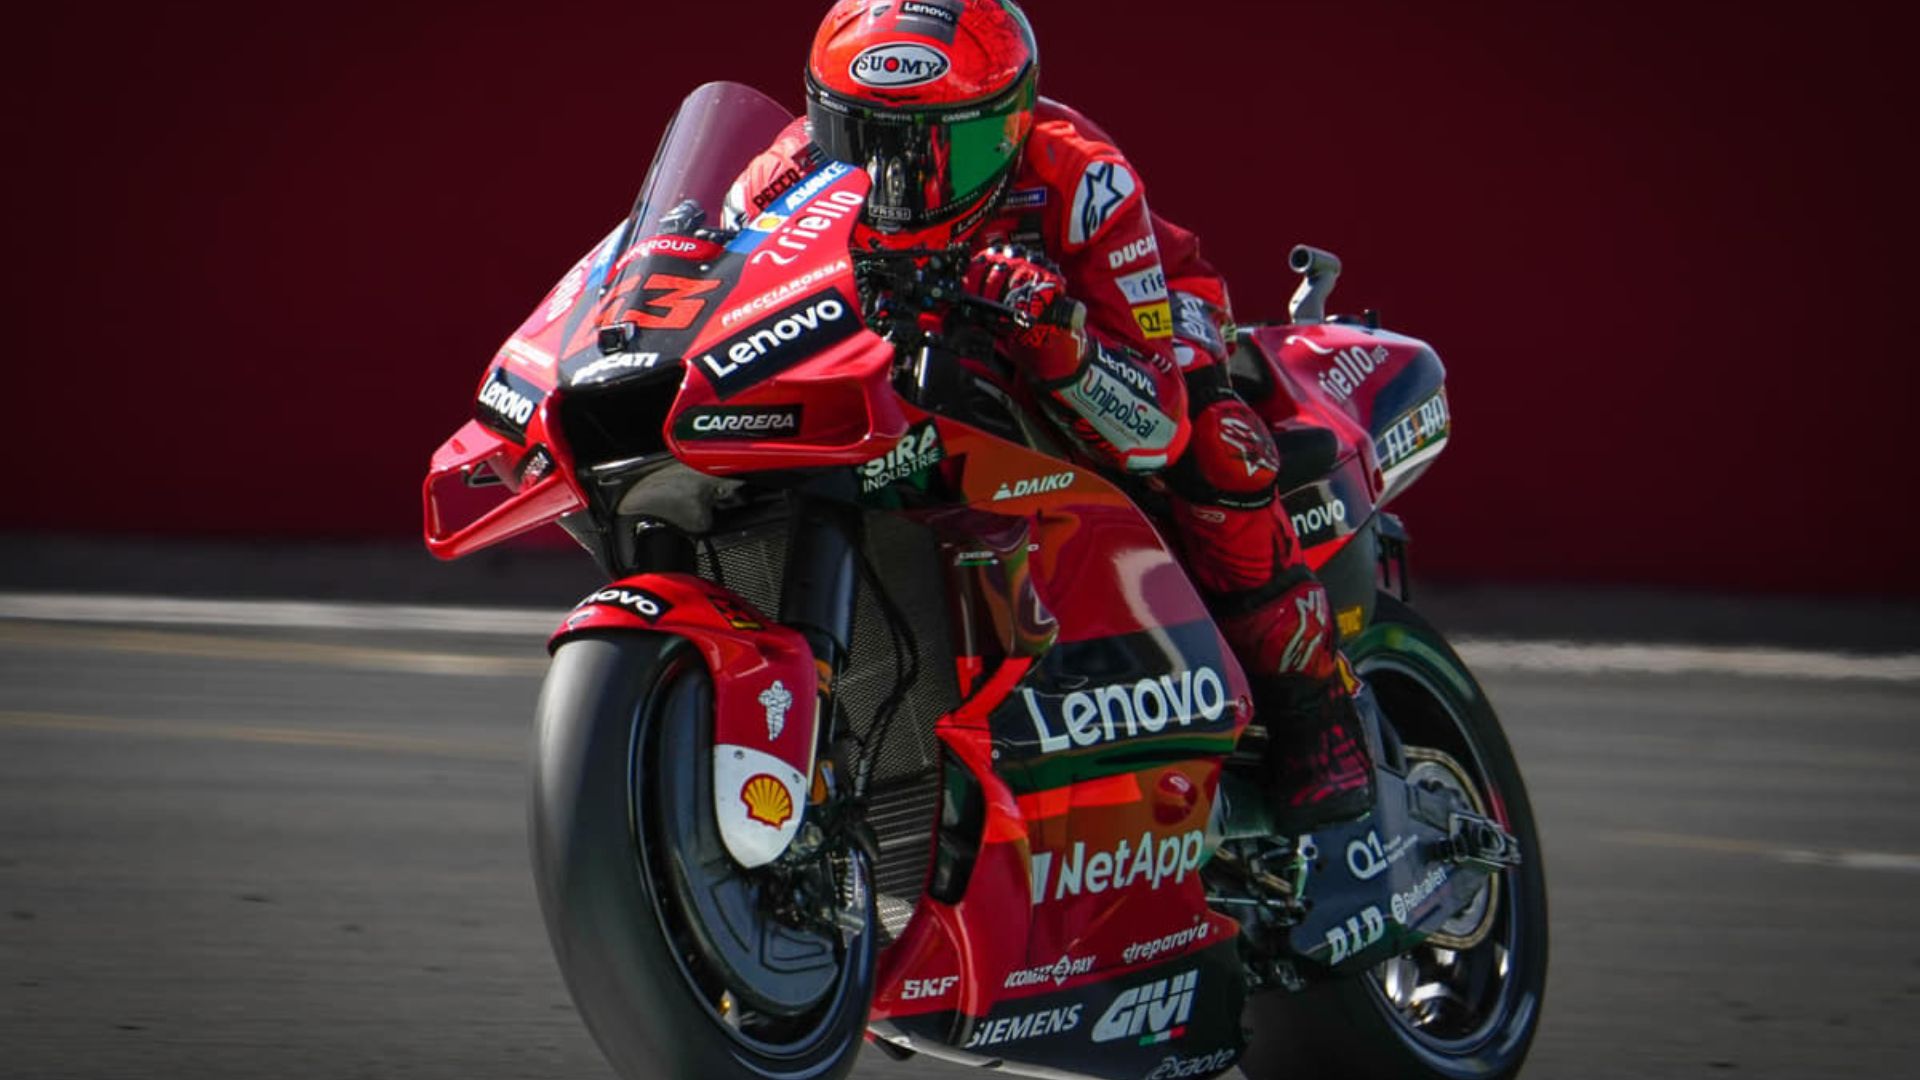 Temporada 2023 Moto GP ganha novidades. - PRO MOTO Revistas de Moto e  Notícias sempre atualizadas sobre motociclismo